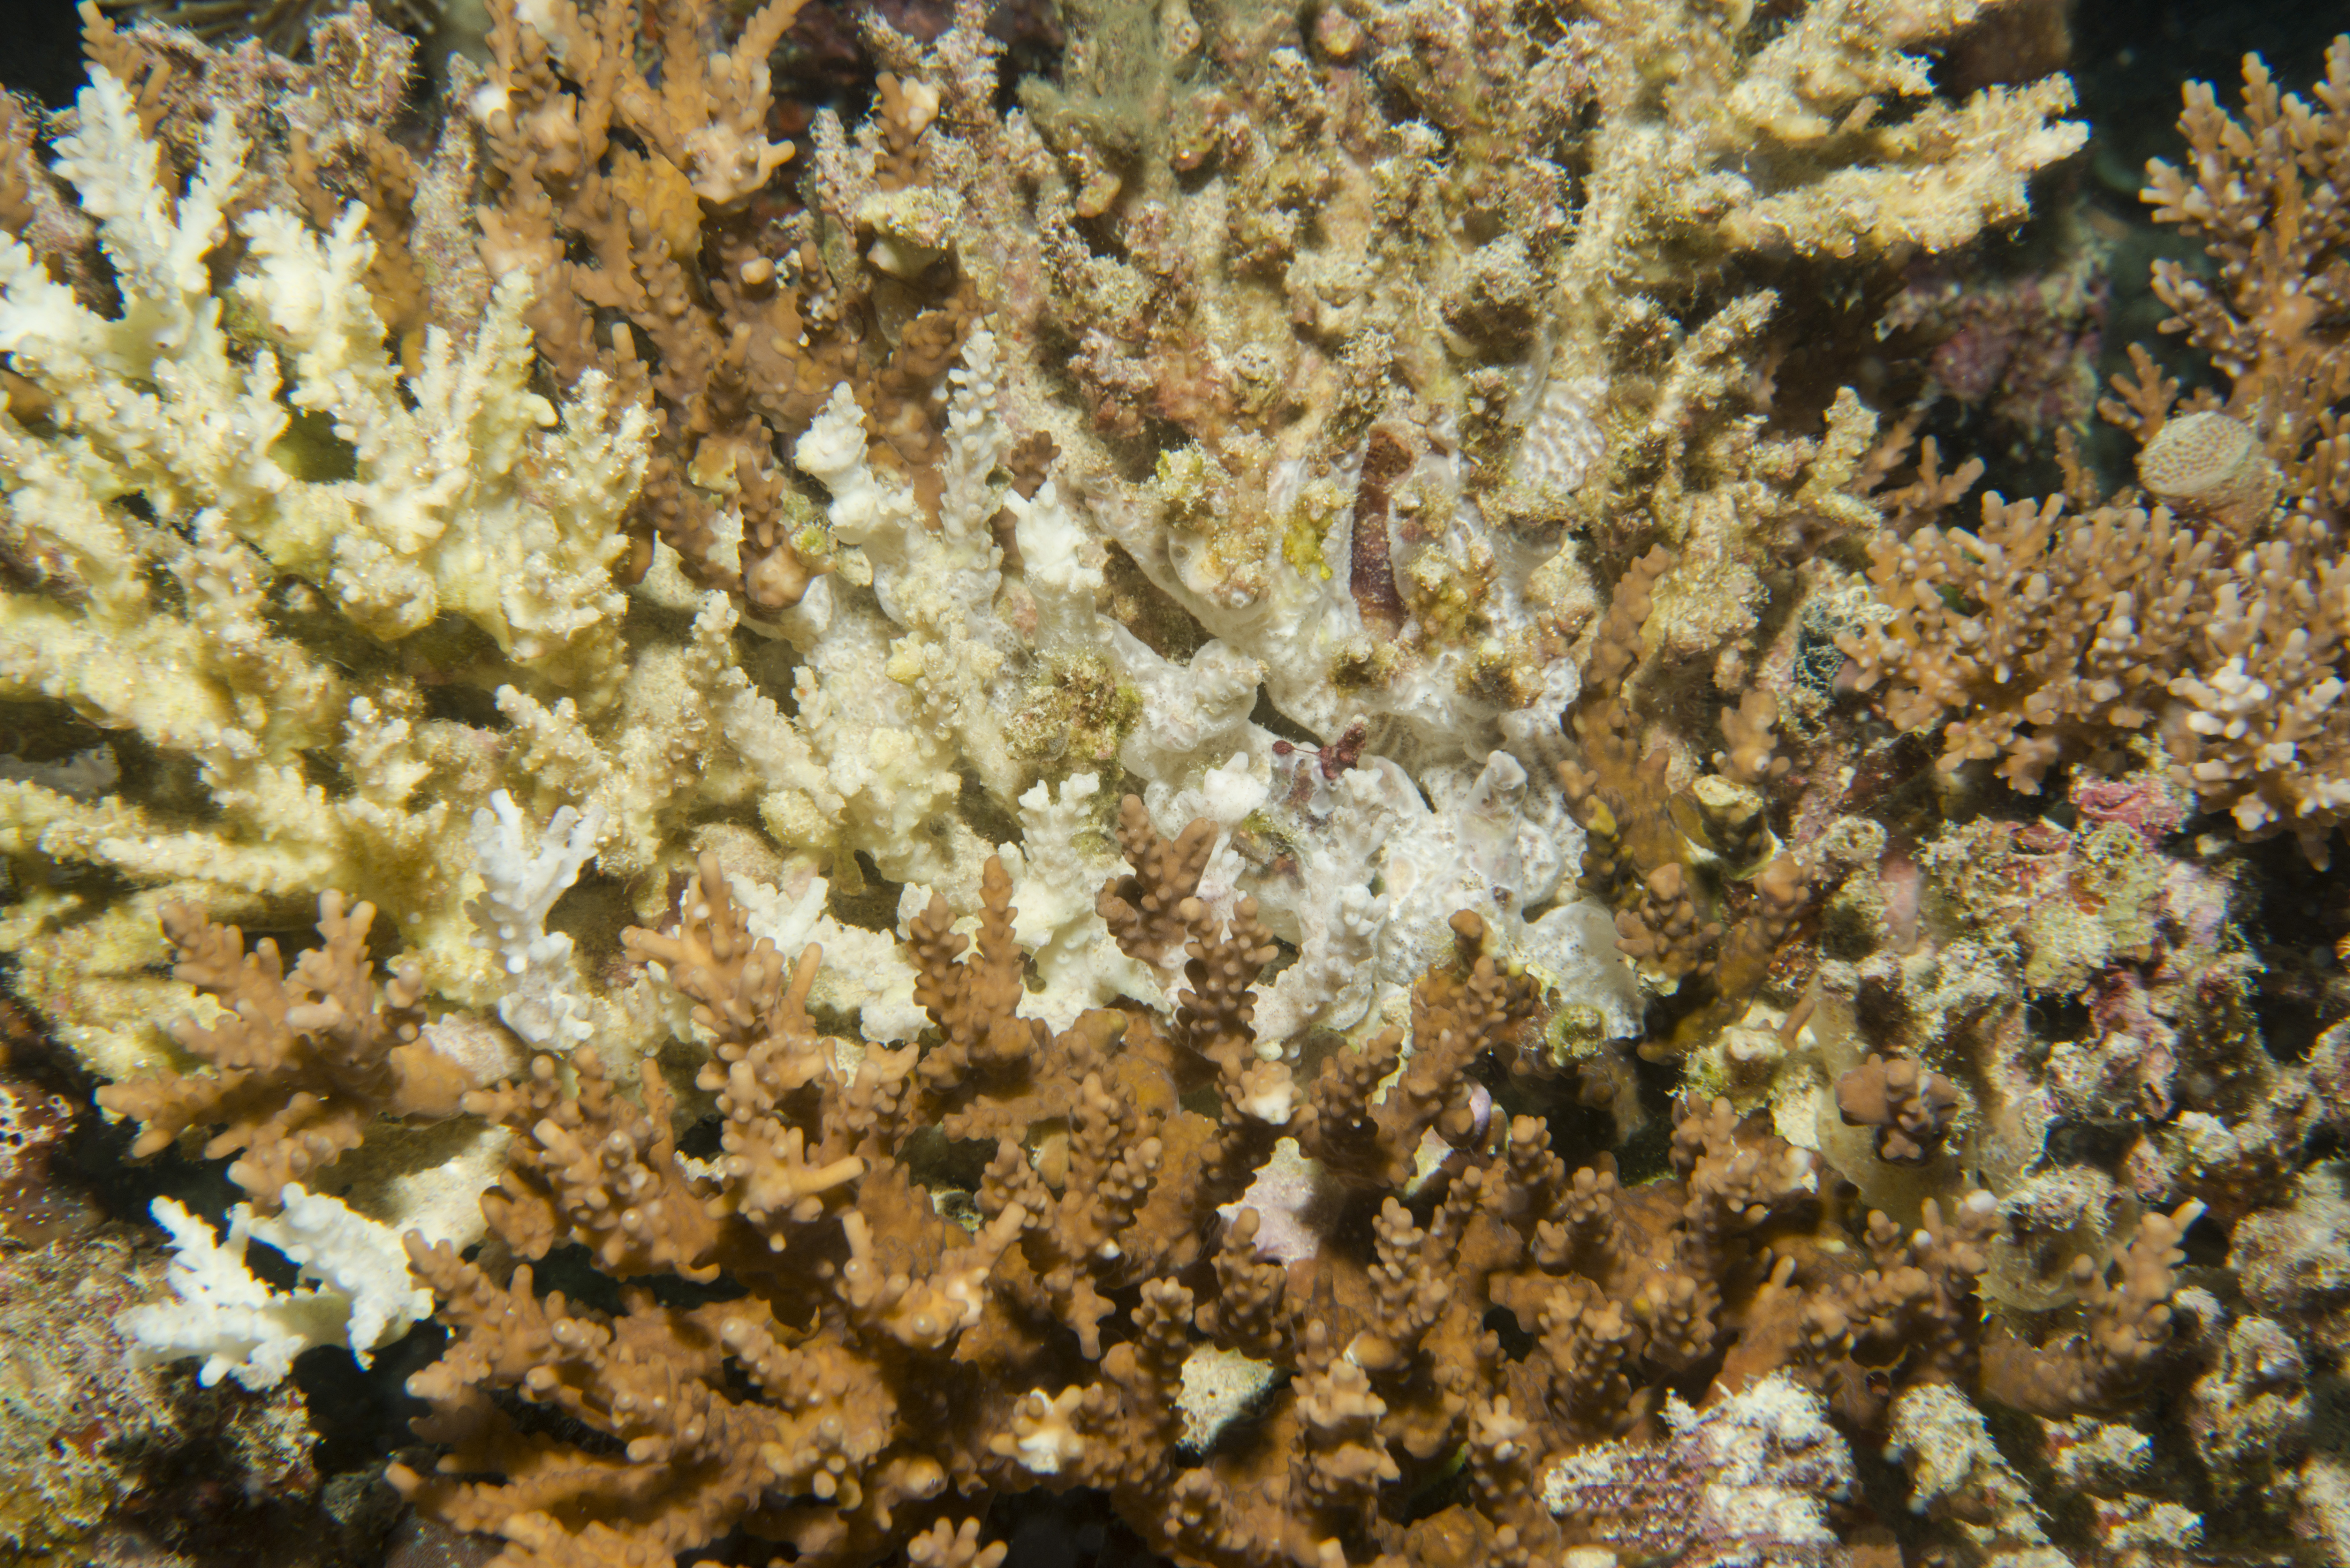 Coral bleaching.